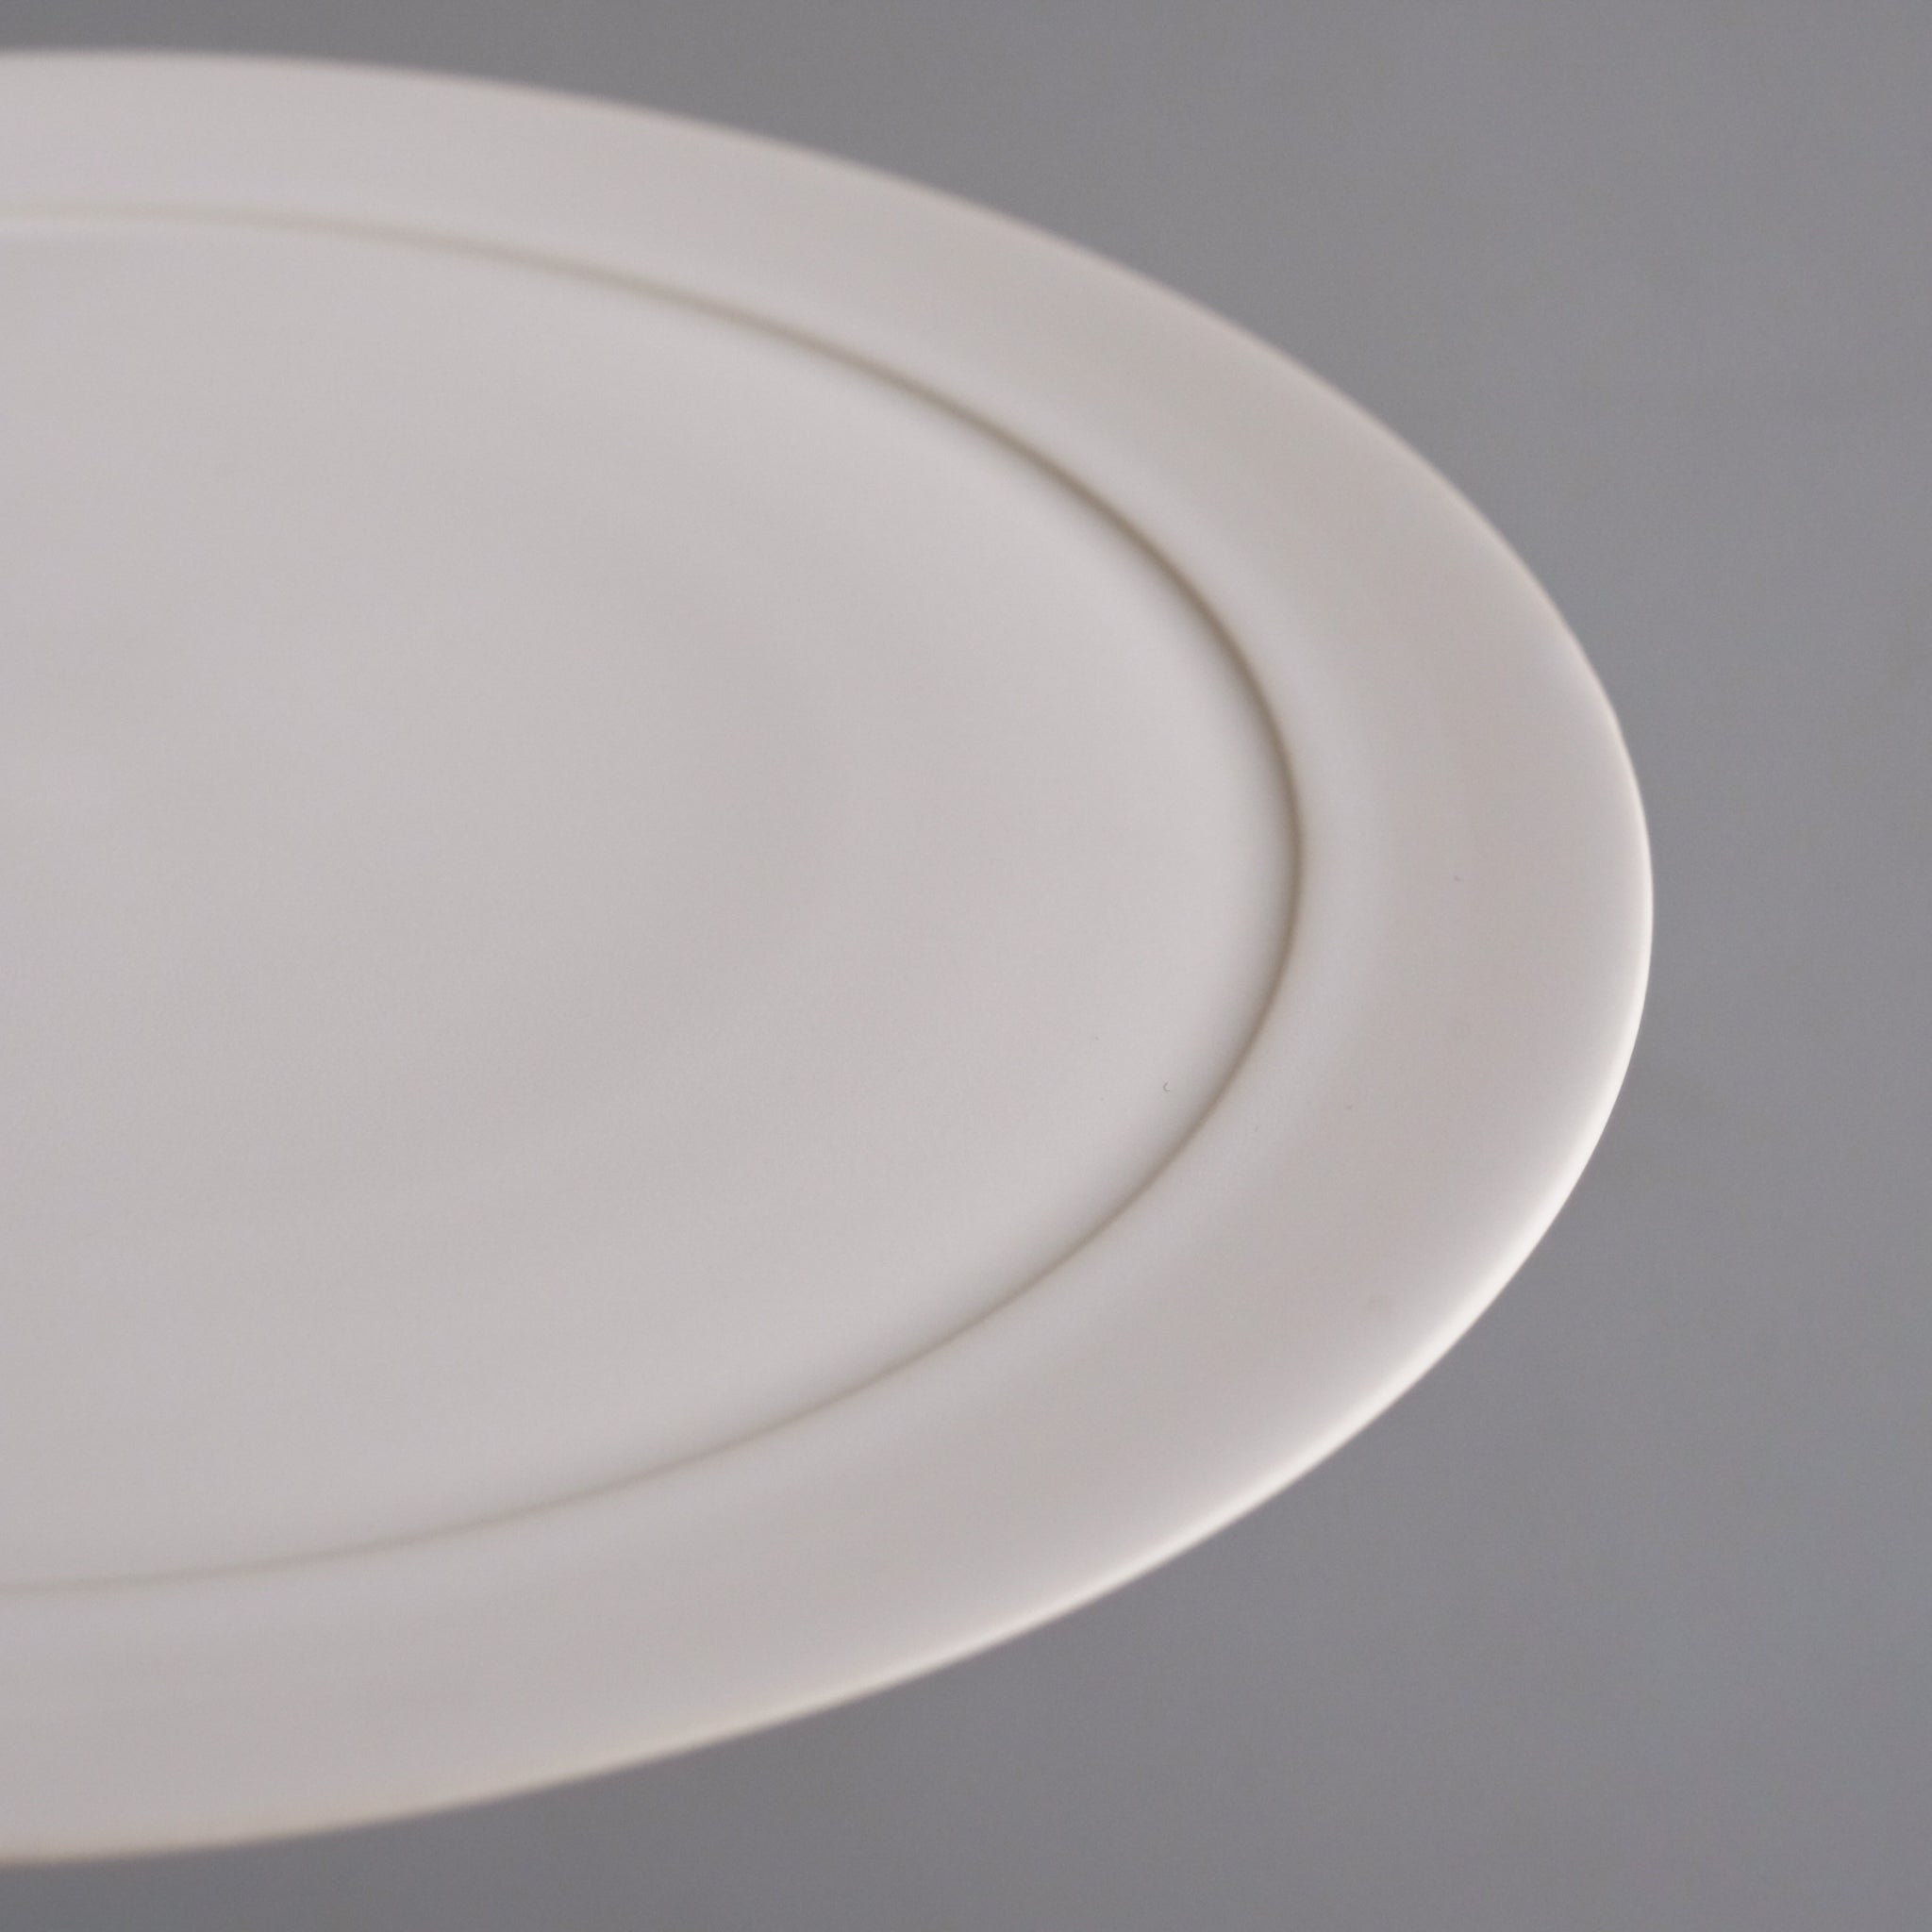 服部竜也  白マットリムプレート (φ24.5cm) Tatsuya Hattori  Rim plate ( φ24.5cm, matte white ) ETH36